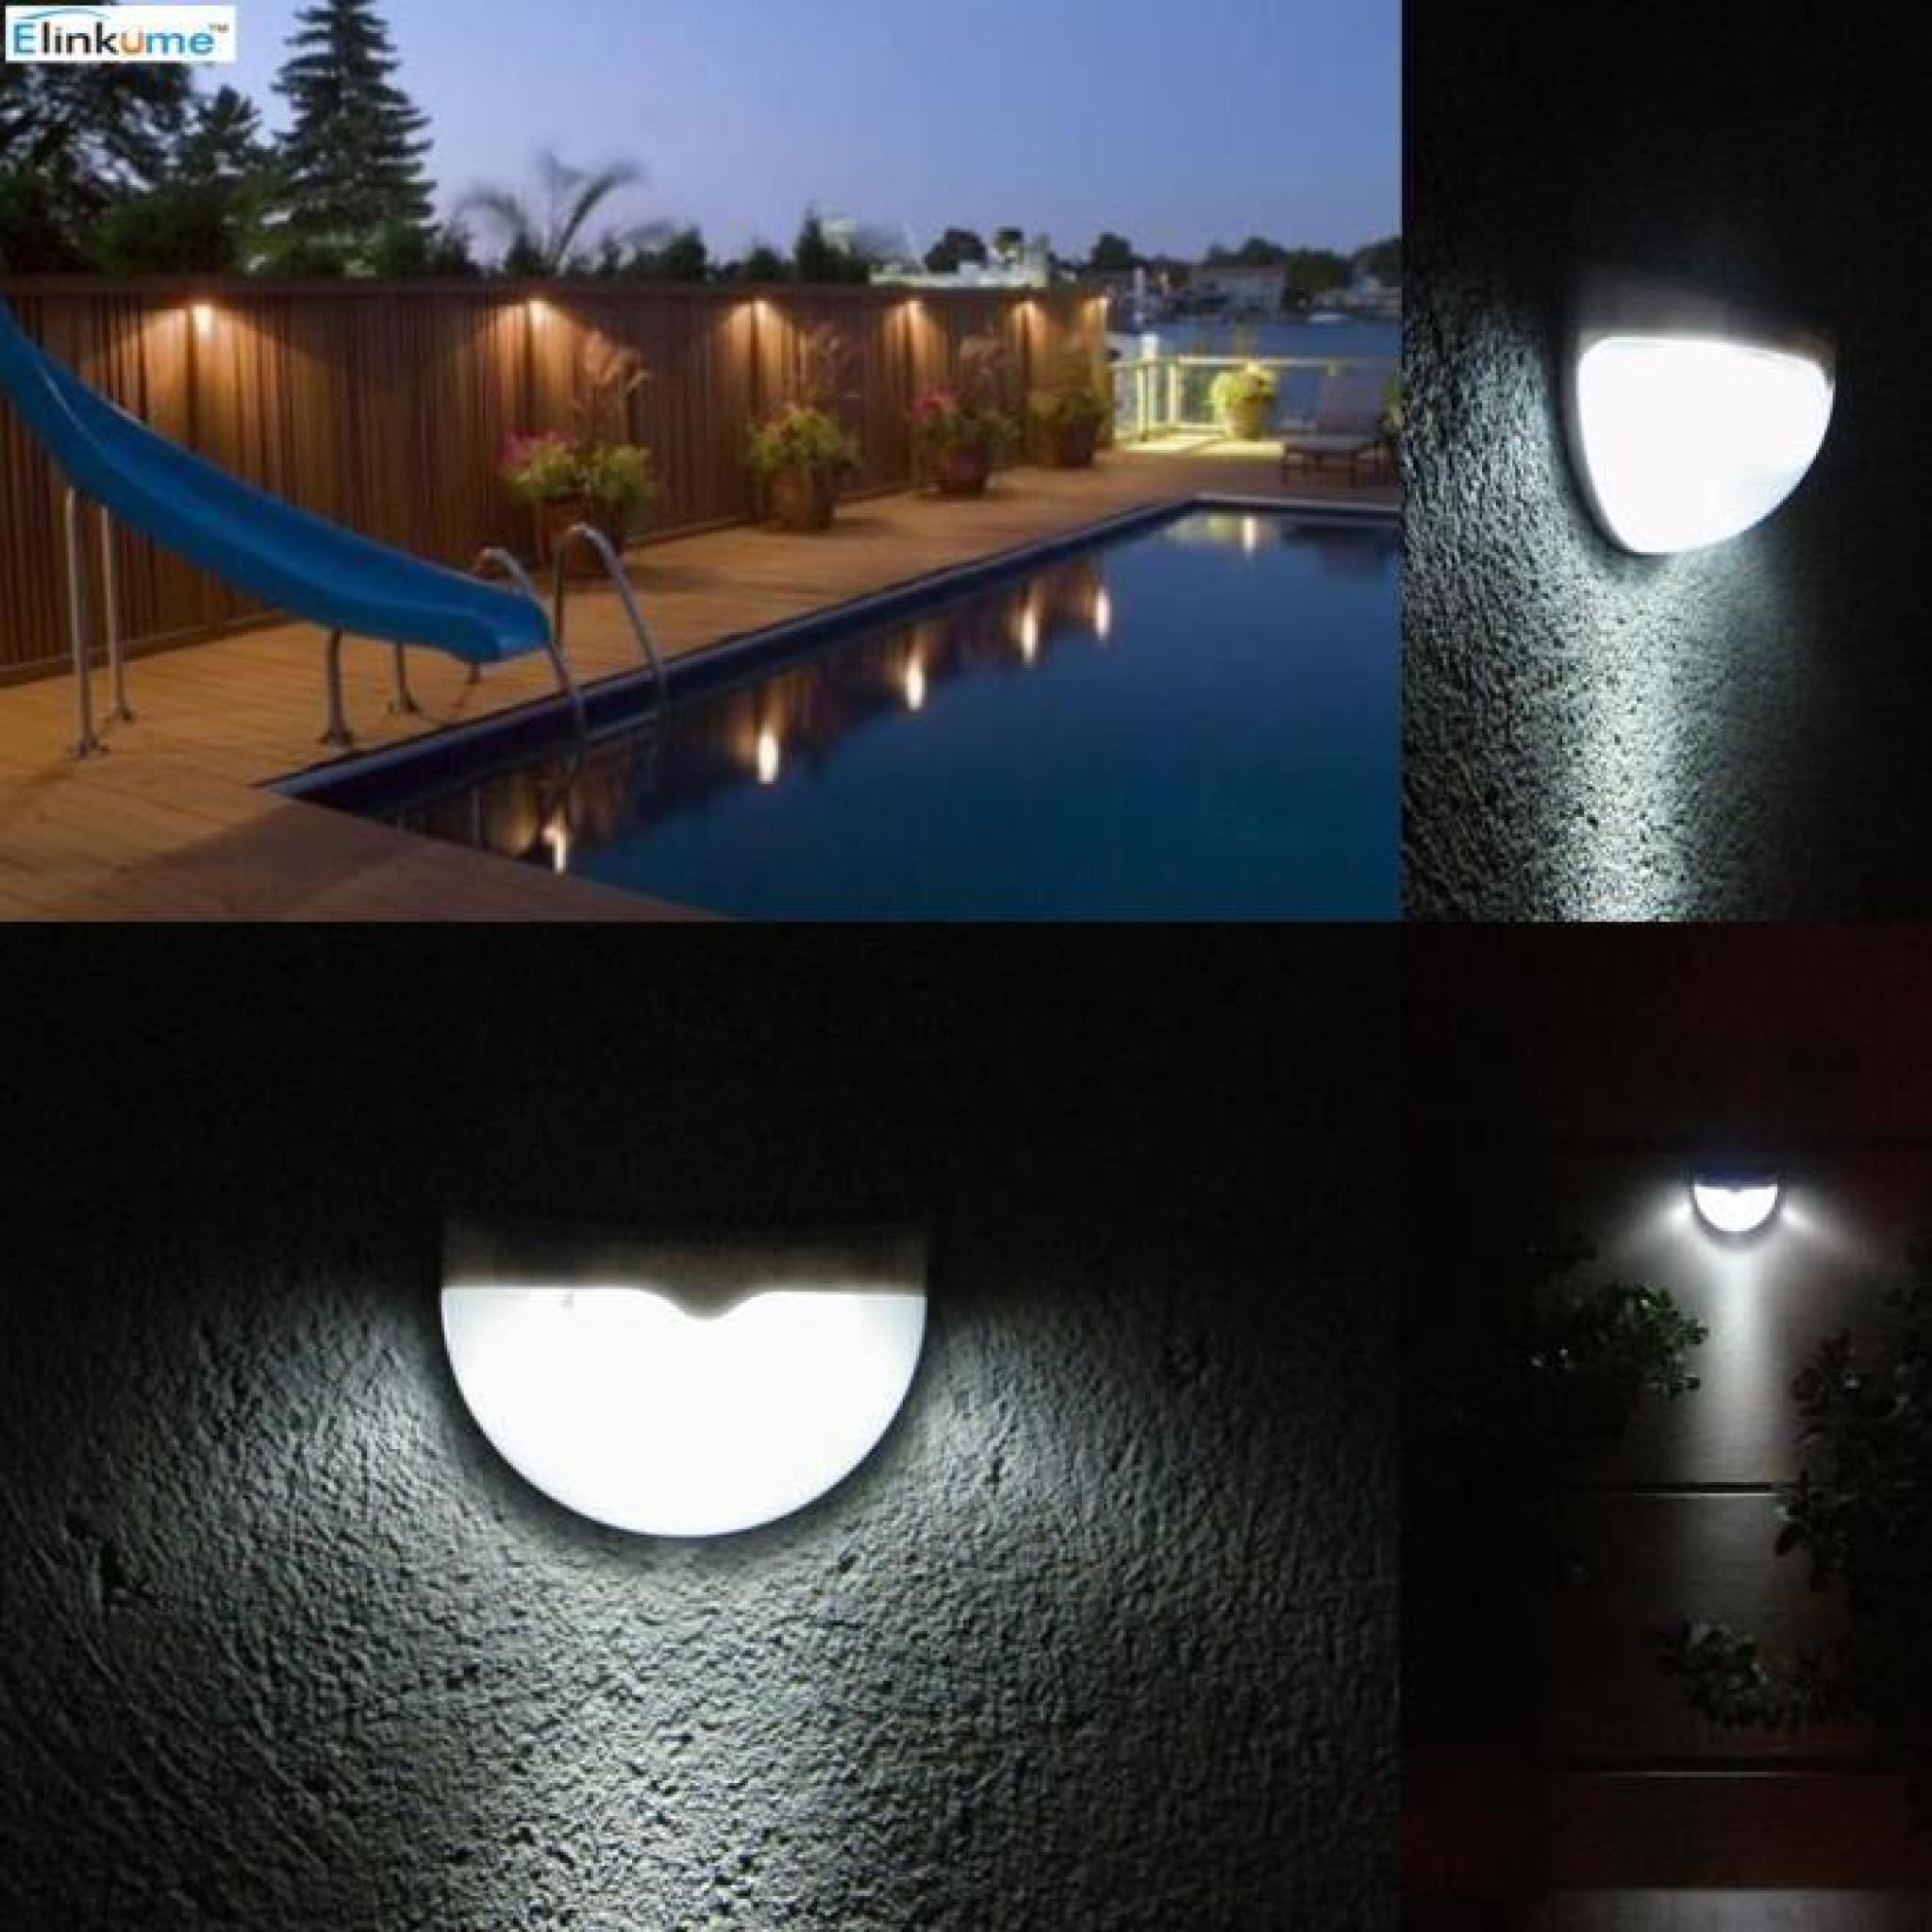 Elinkume les lumières LED jardin-6X 1W énergie solaire LED ,Blanc,éclairage automatique la nuit pas cher